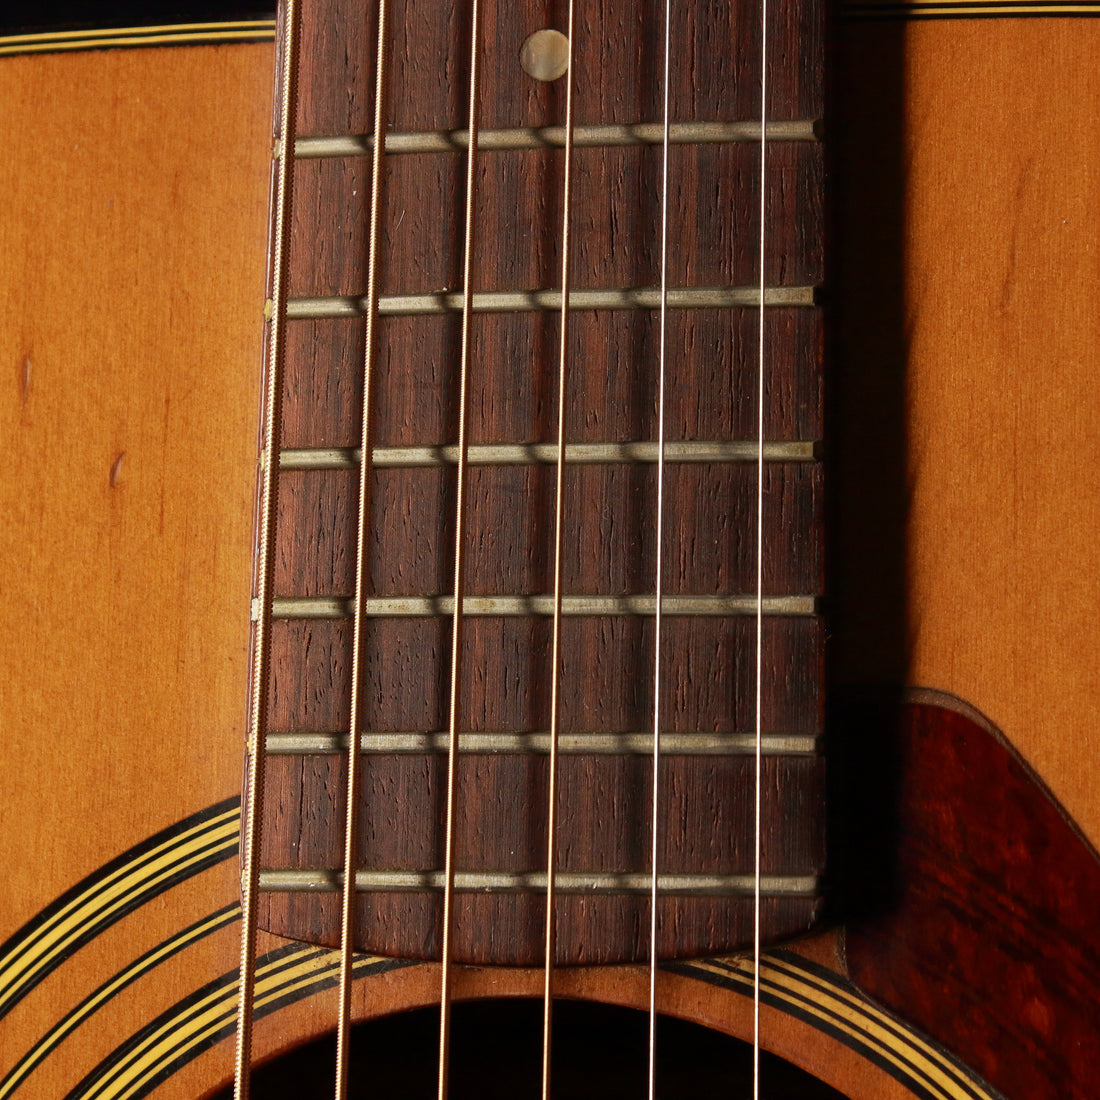 Yamaha FG-170 Folk Size Acoustic 1974